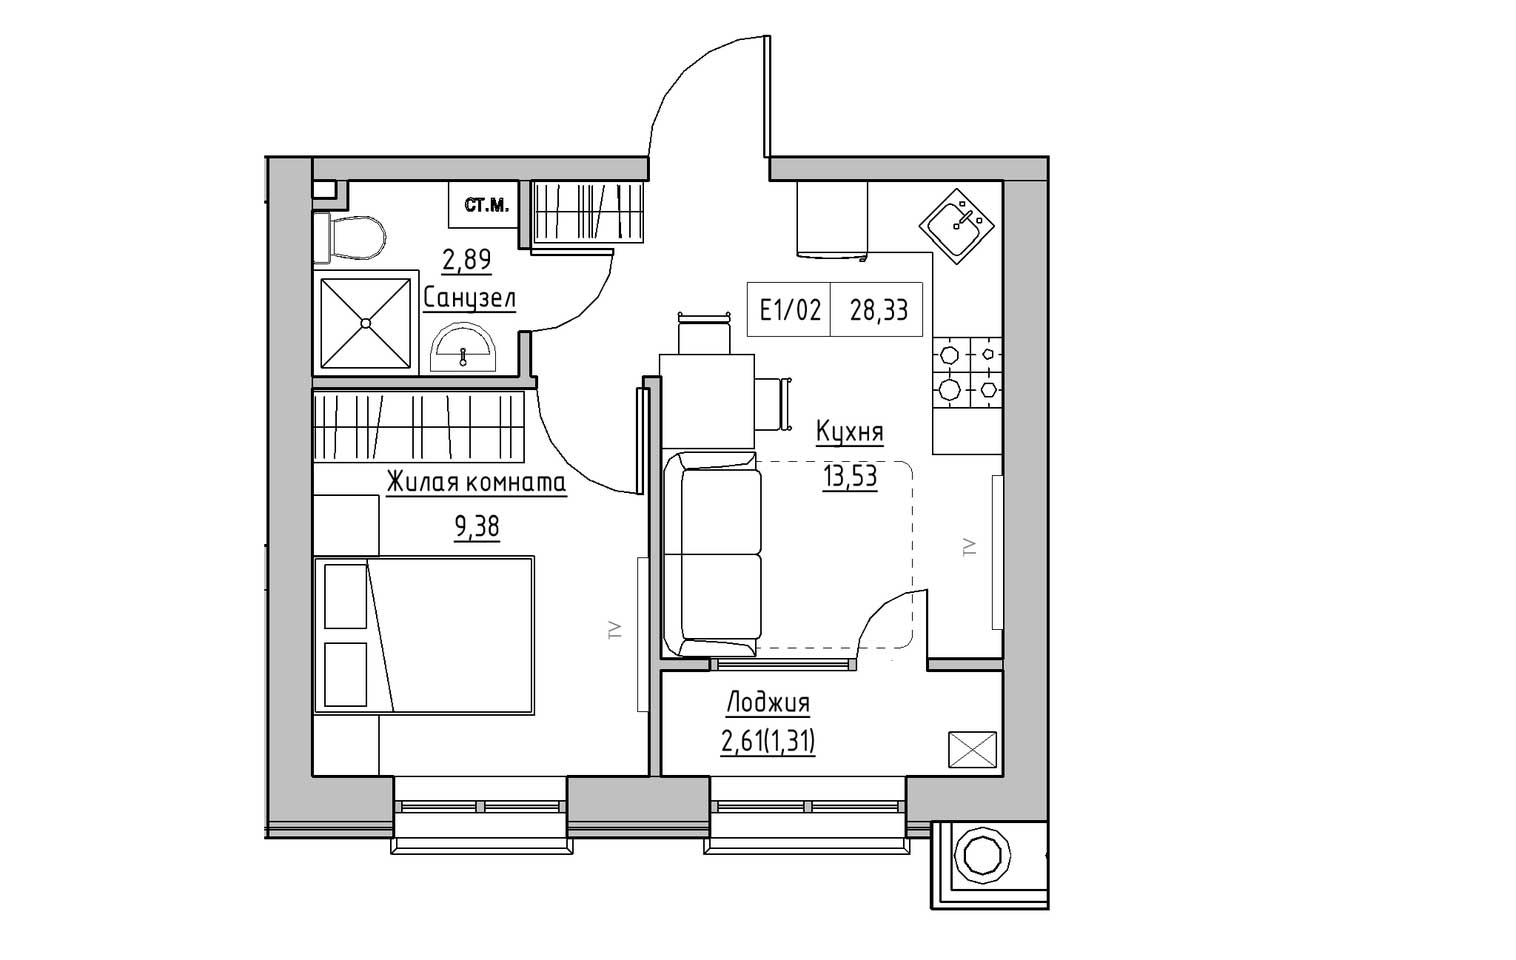 Планування 1-к квартира площею 28.33м2, KS-009-03/0013.